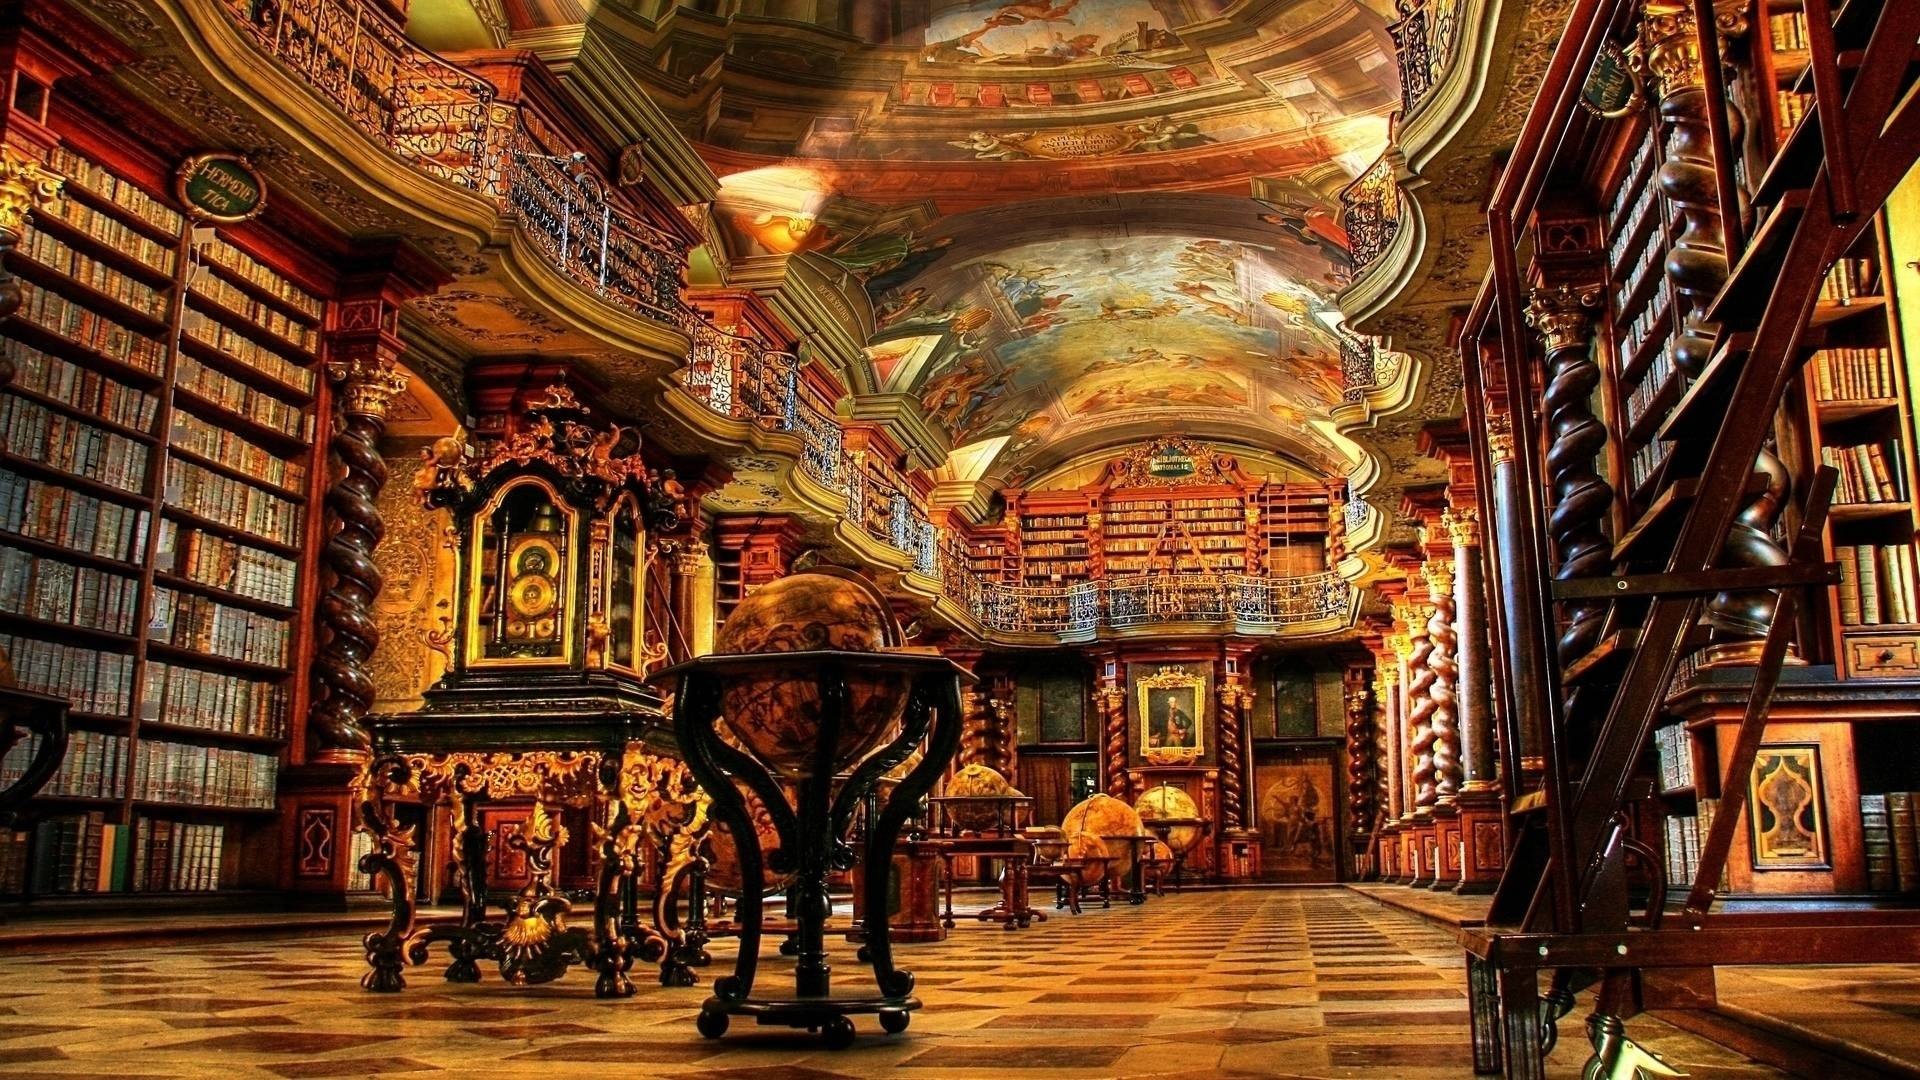 Library, Building, Architecture, Prague, Czech Republic, - University Of Cambridge , HD Wallpaper & Backgrounds